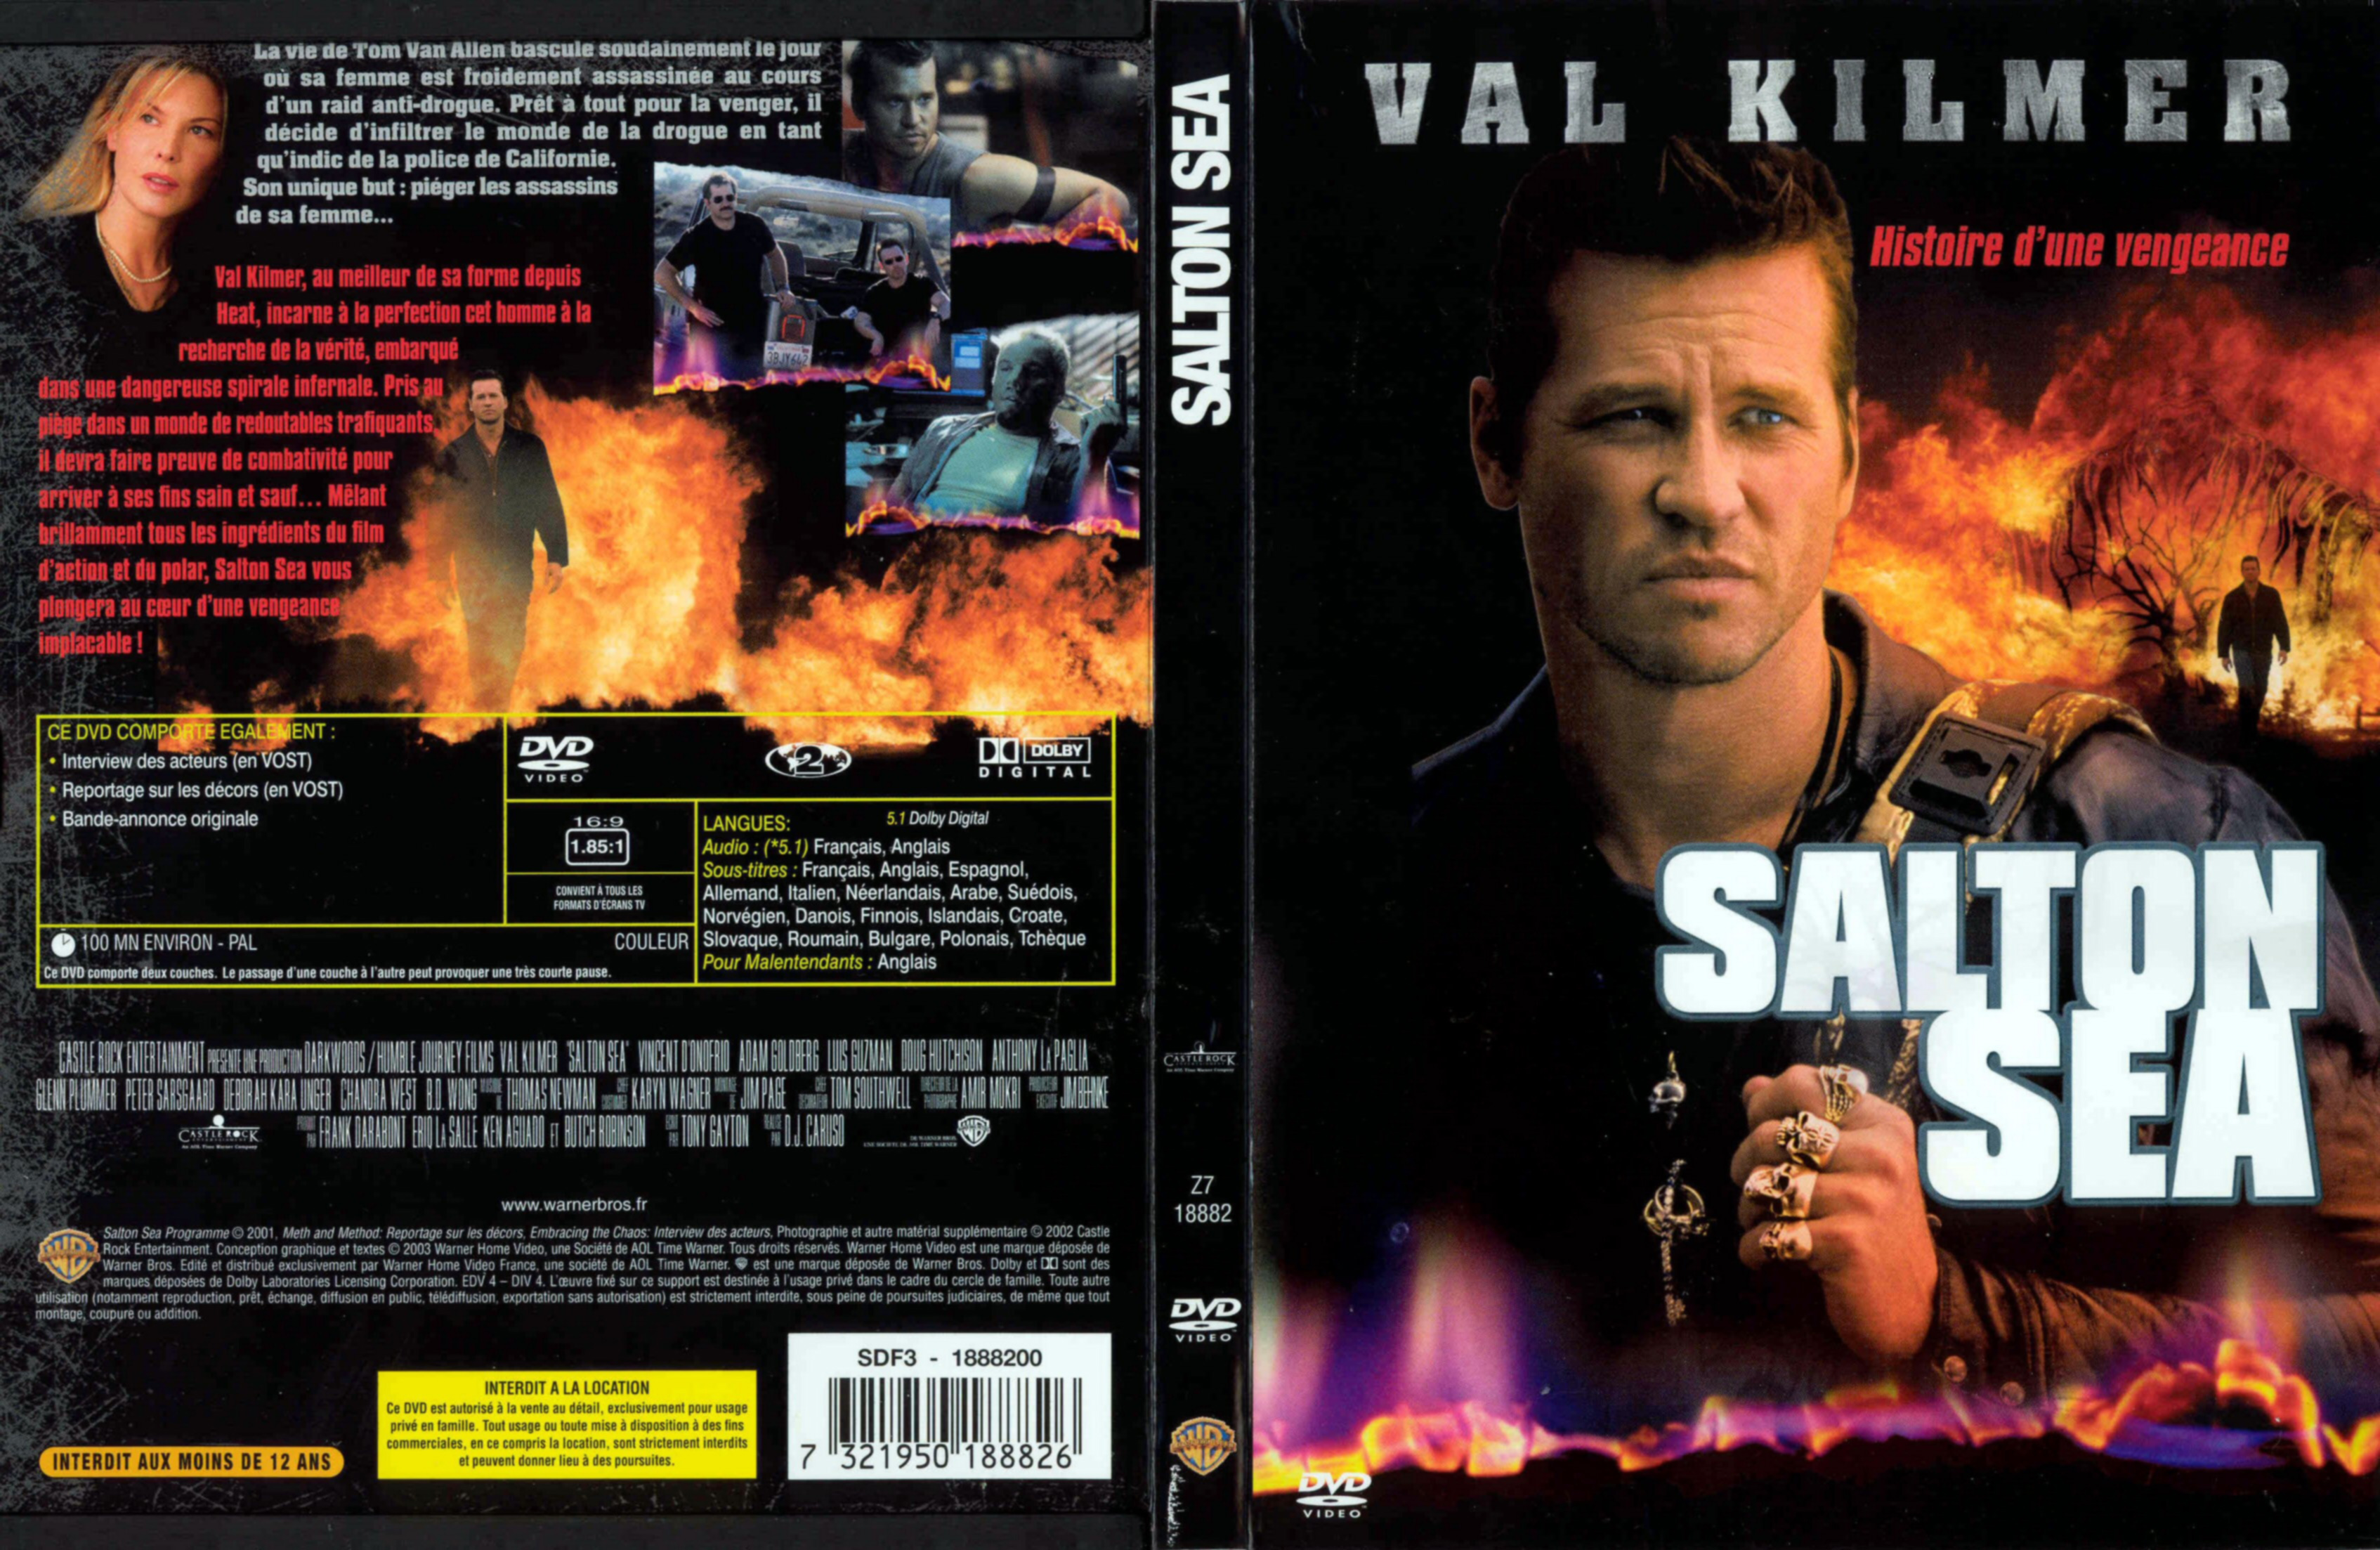 Jaquette DVD Salton sea